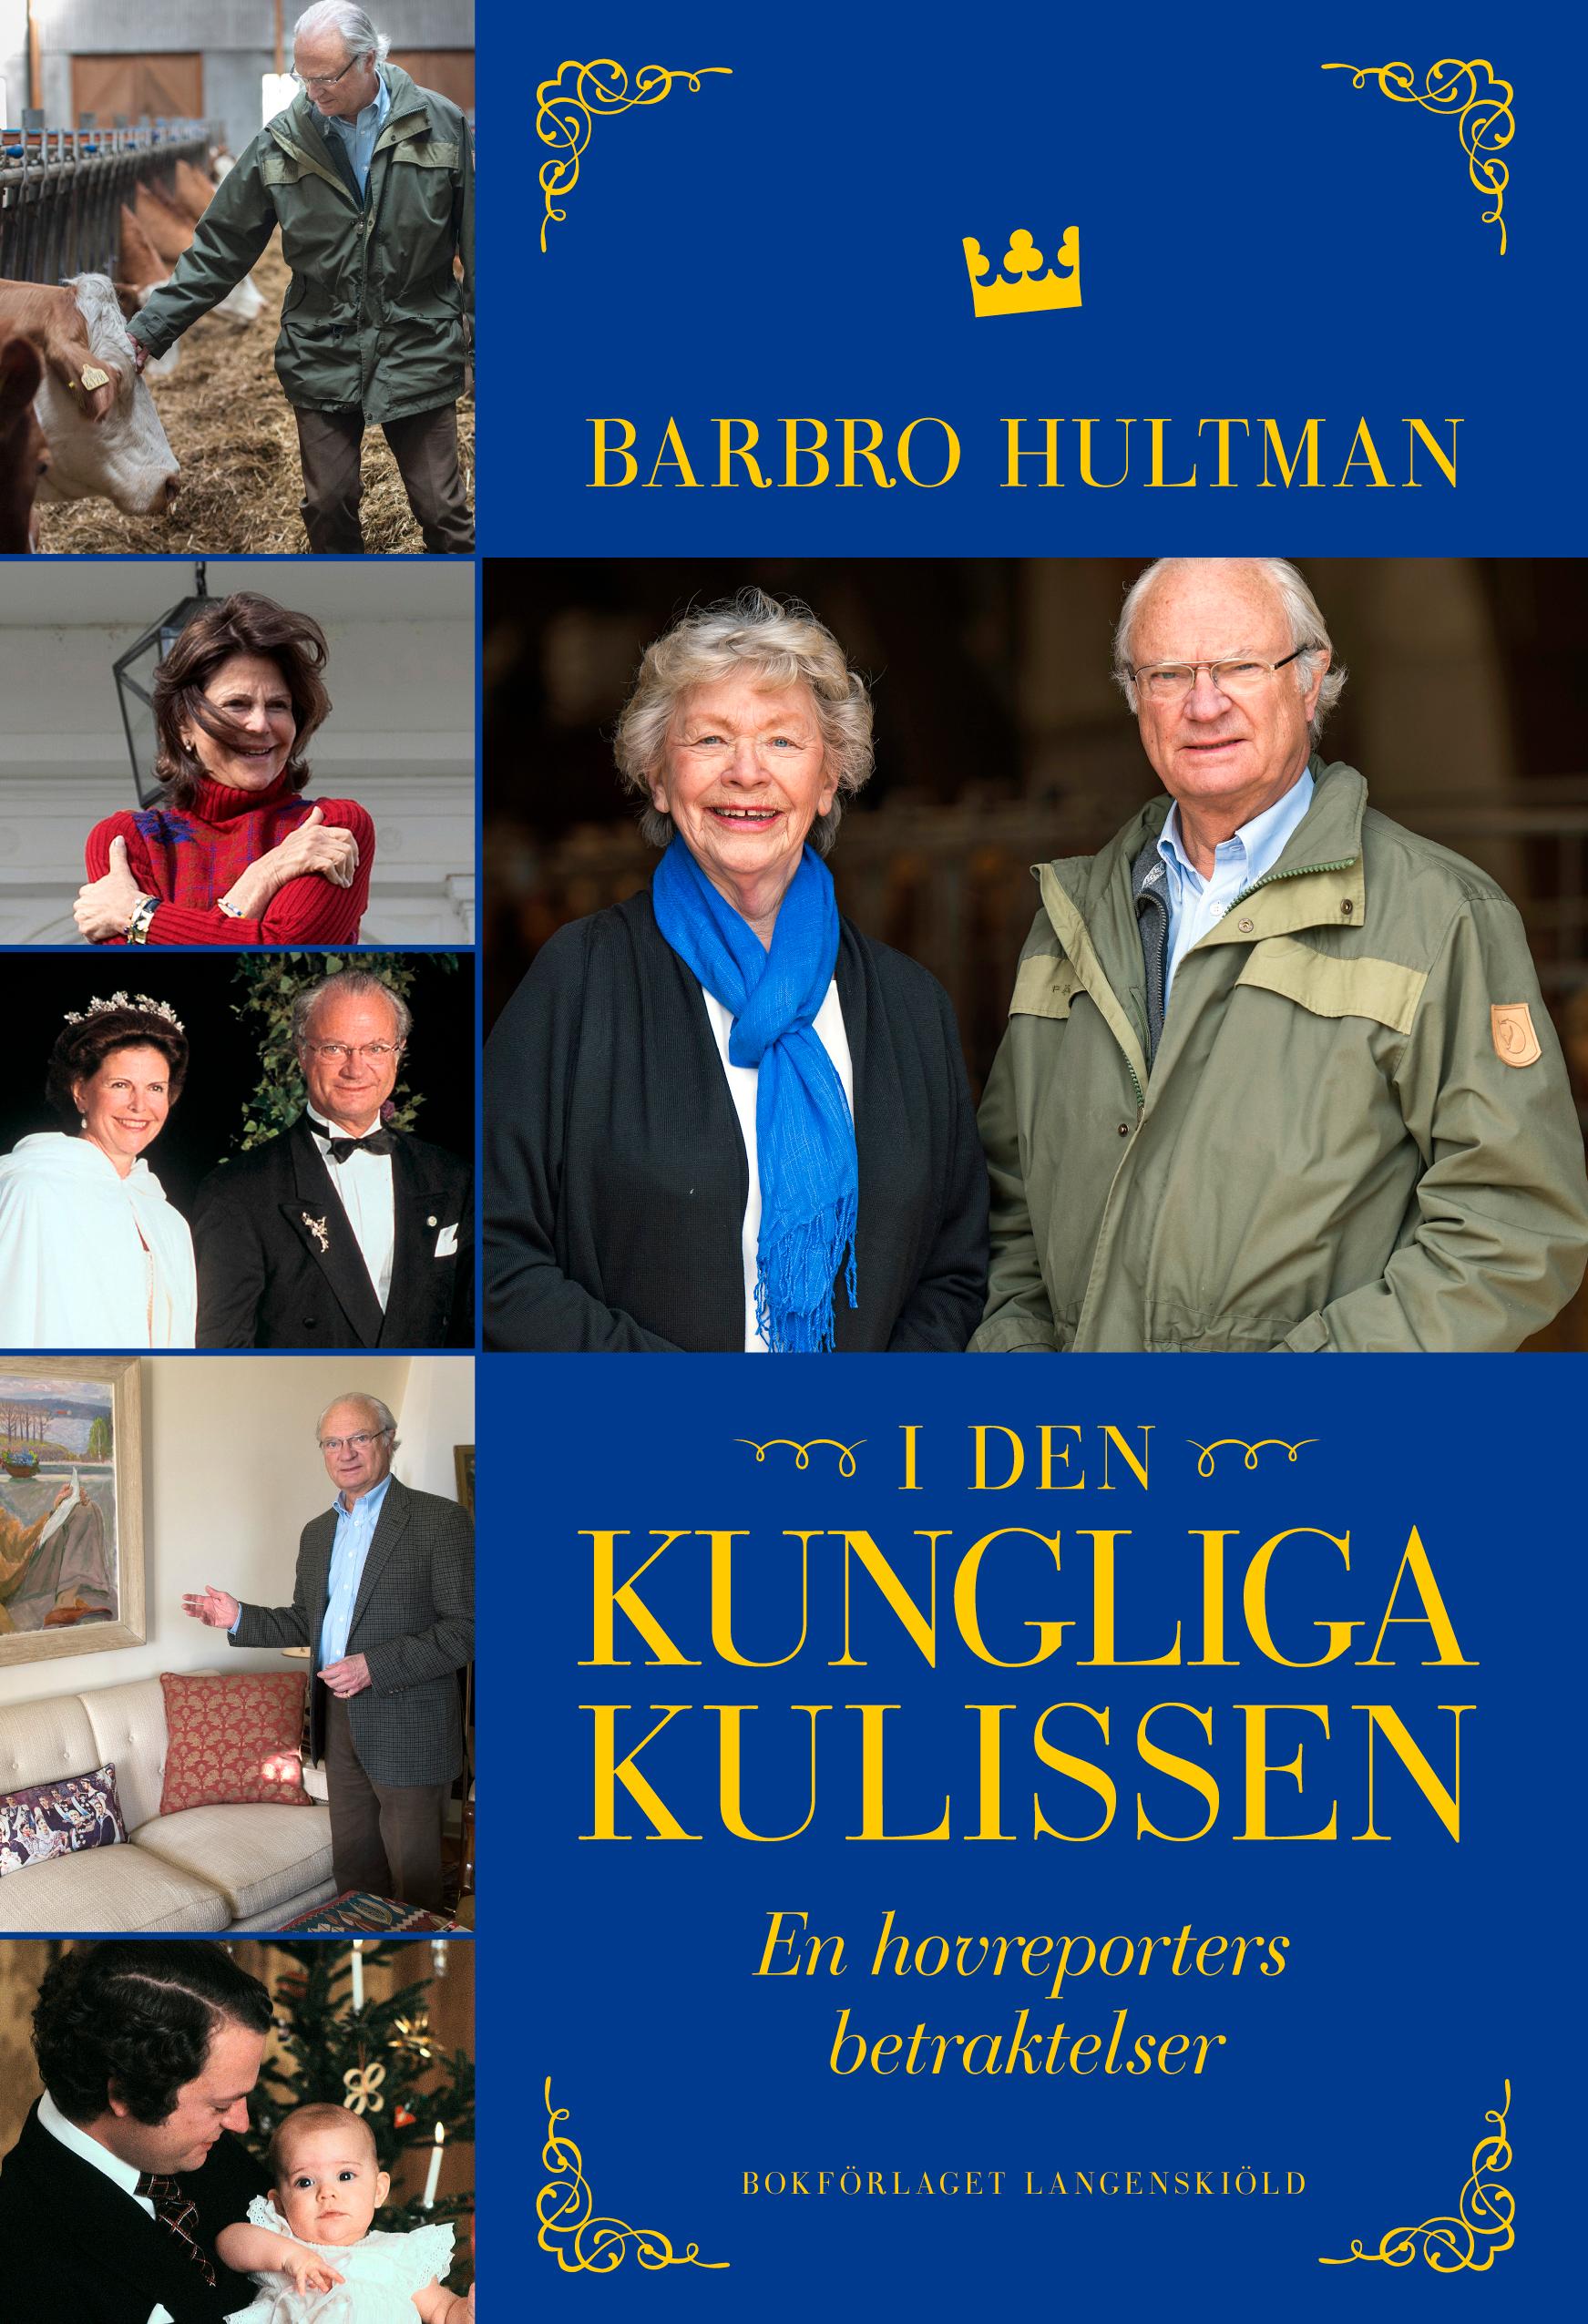 Omslaget till Barbro Hultmans bok ”I den kungliga kulissen”.